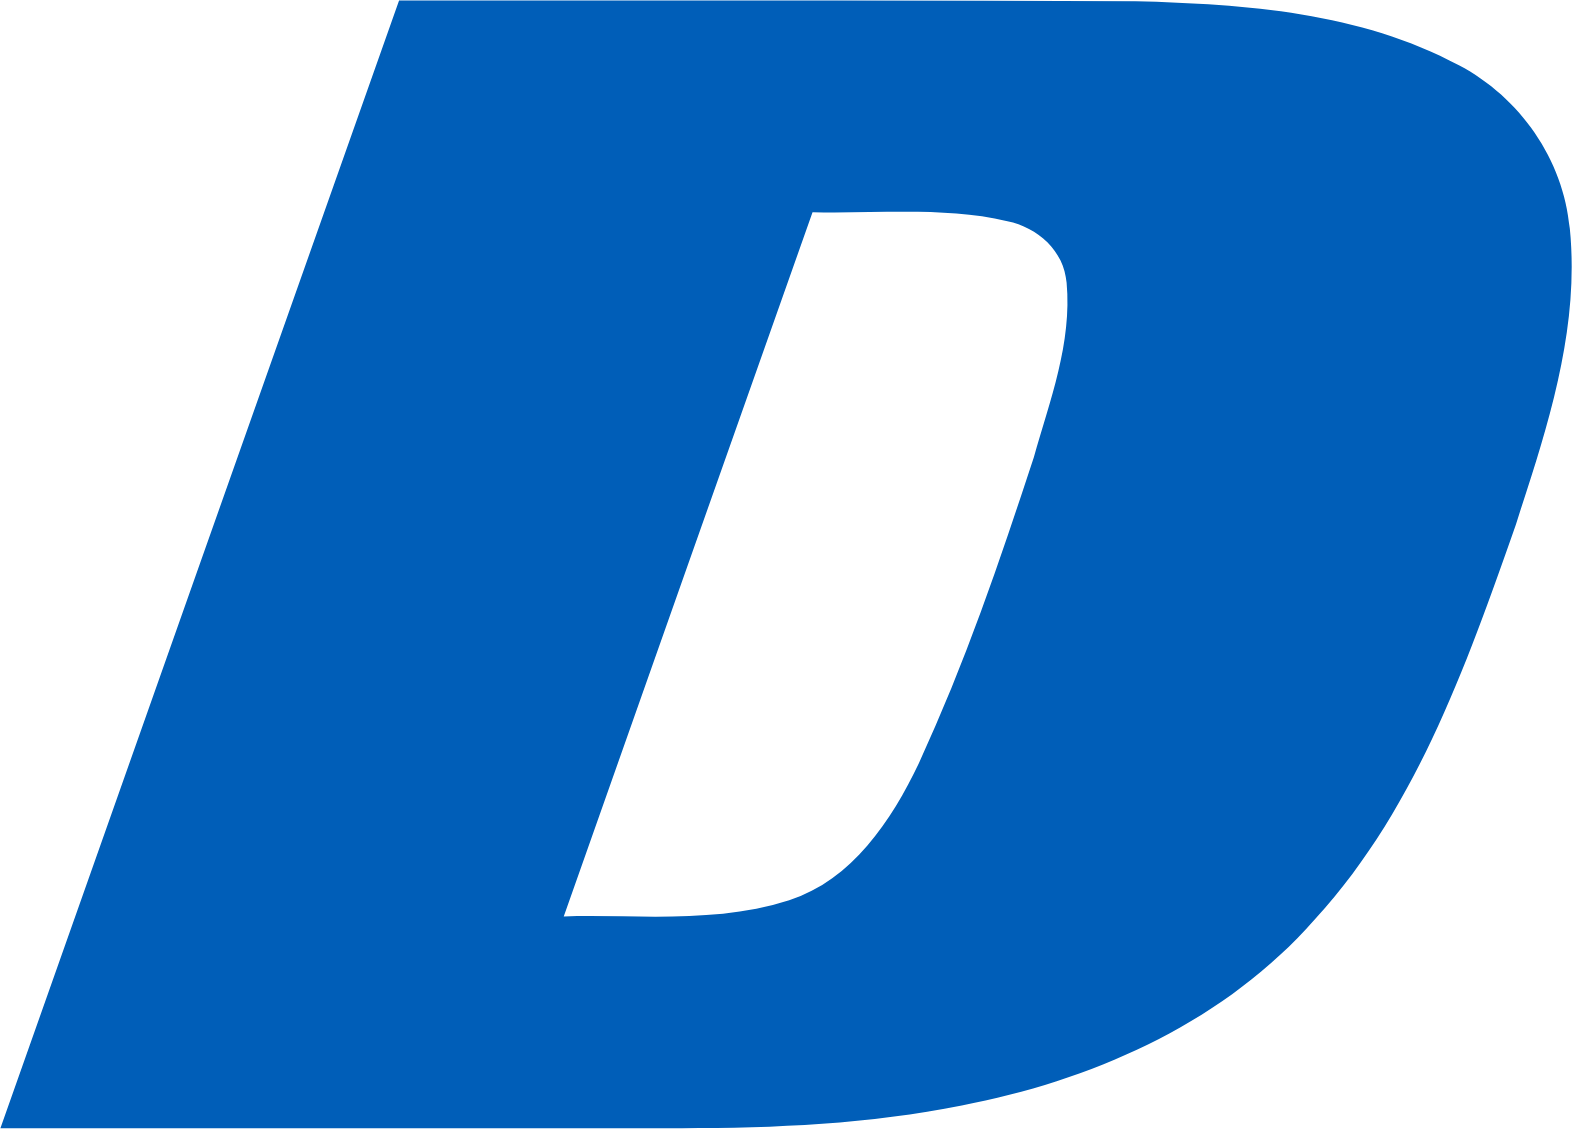 Doosan Bobcat logo (PNG transparent)